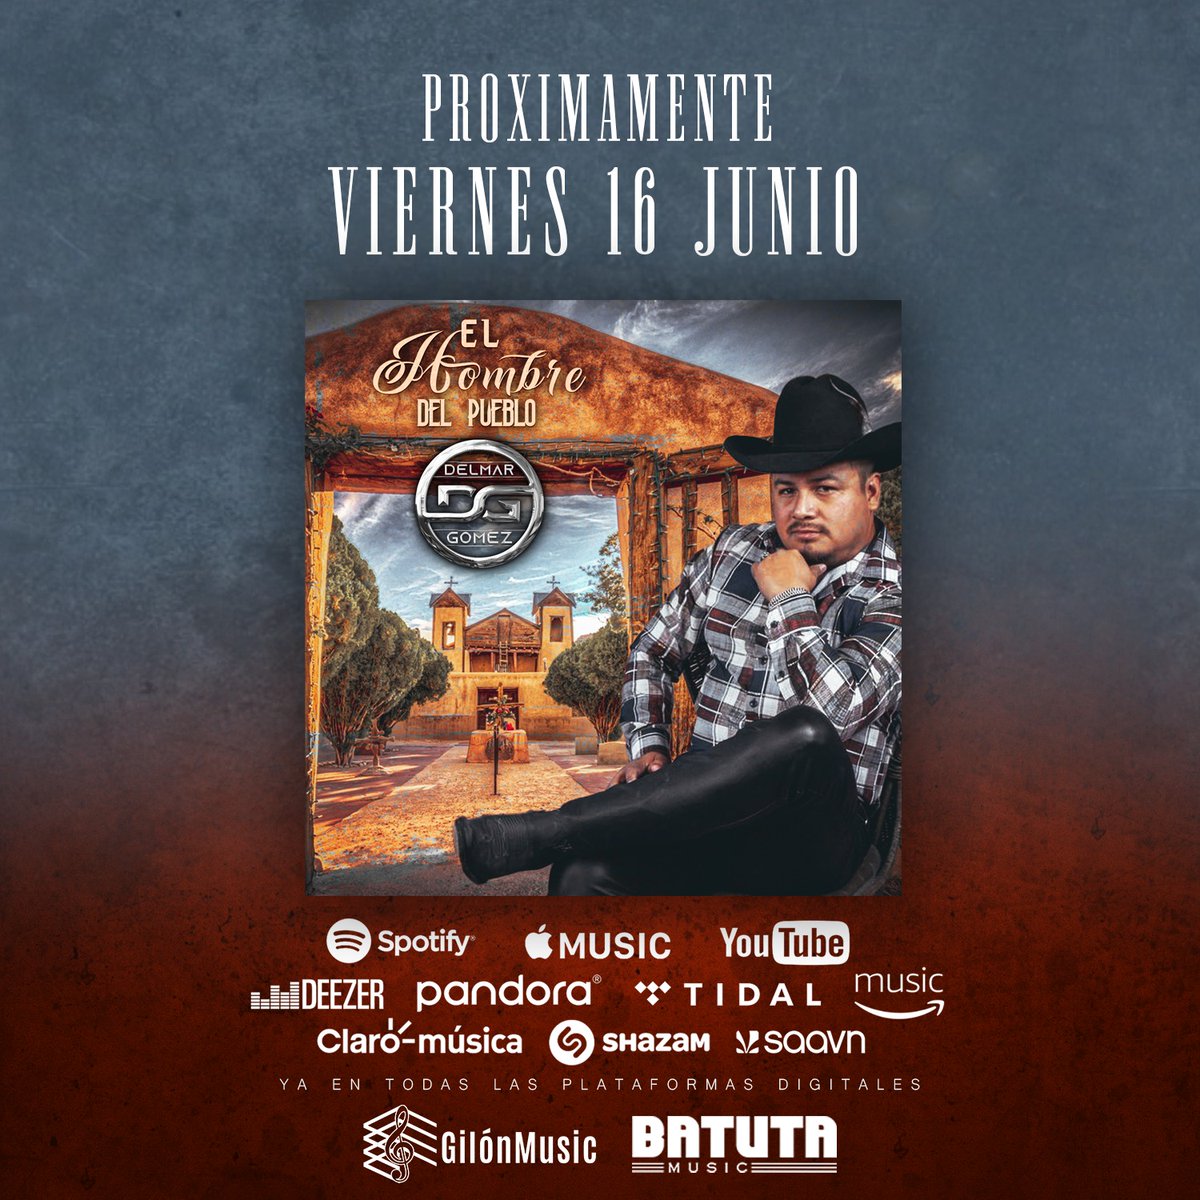 VIERNES 16 DE JUNIO Se estrena el nuevo album del compa DELMAR GOMEZ  'El Hombre Del Pueblo' NO TE LO PIERDAS en PLATAFORMAS DIGITALES! #batutamusic #gilonmusic #musicanueva #musicamexicana #regionalmexicana #lomasnuevo #Album #tijuana #corridos #PesoPluma #Trending